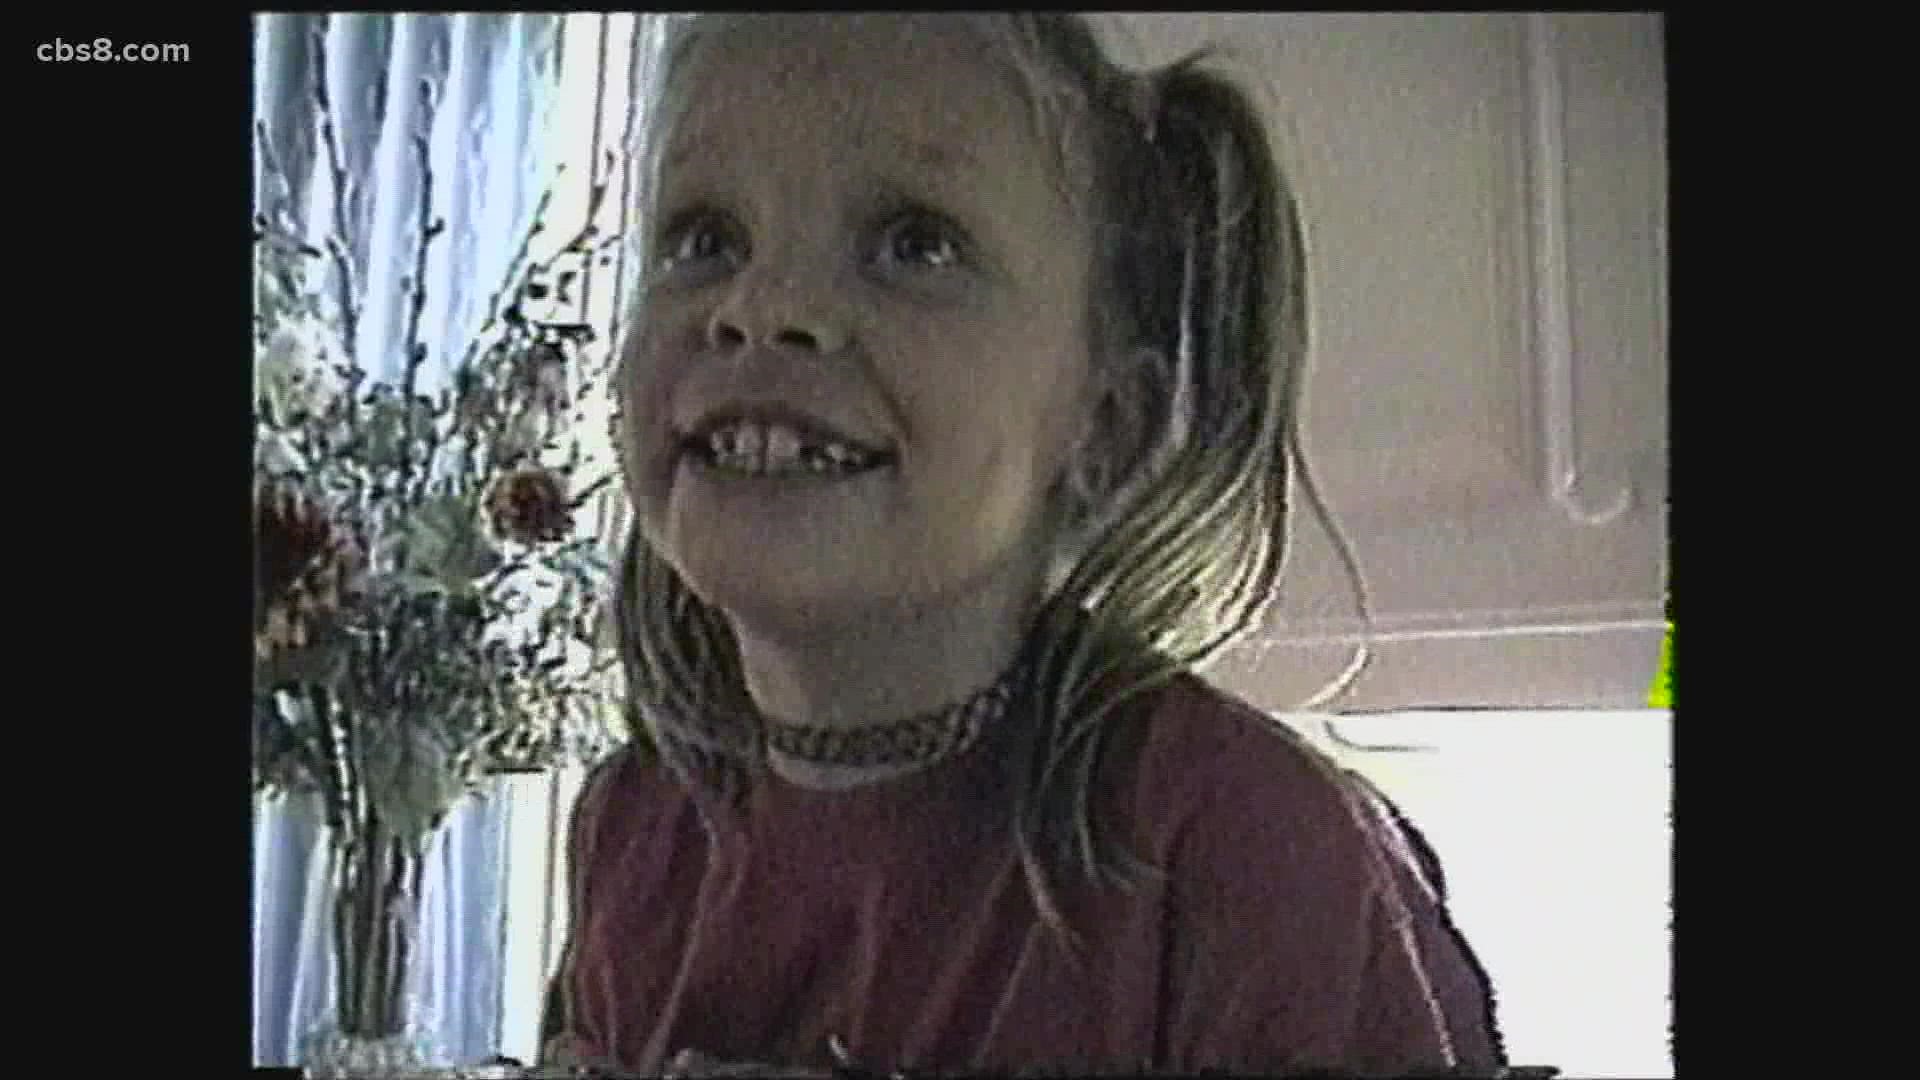 7-year-old taken from her Sabre Springs bedroom by neighbor David Westerfield in 2002.